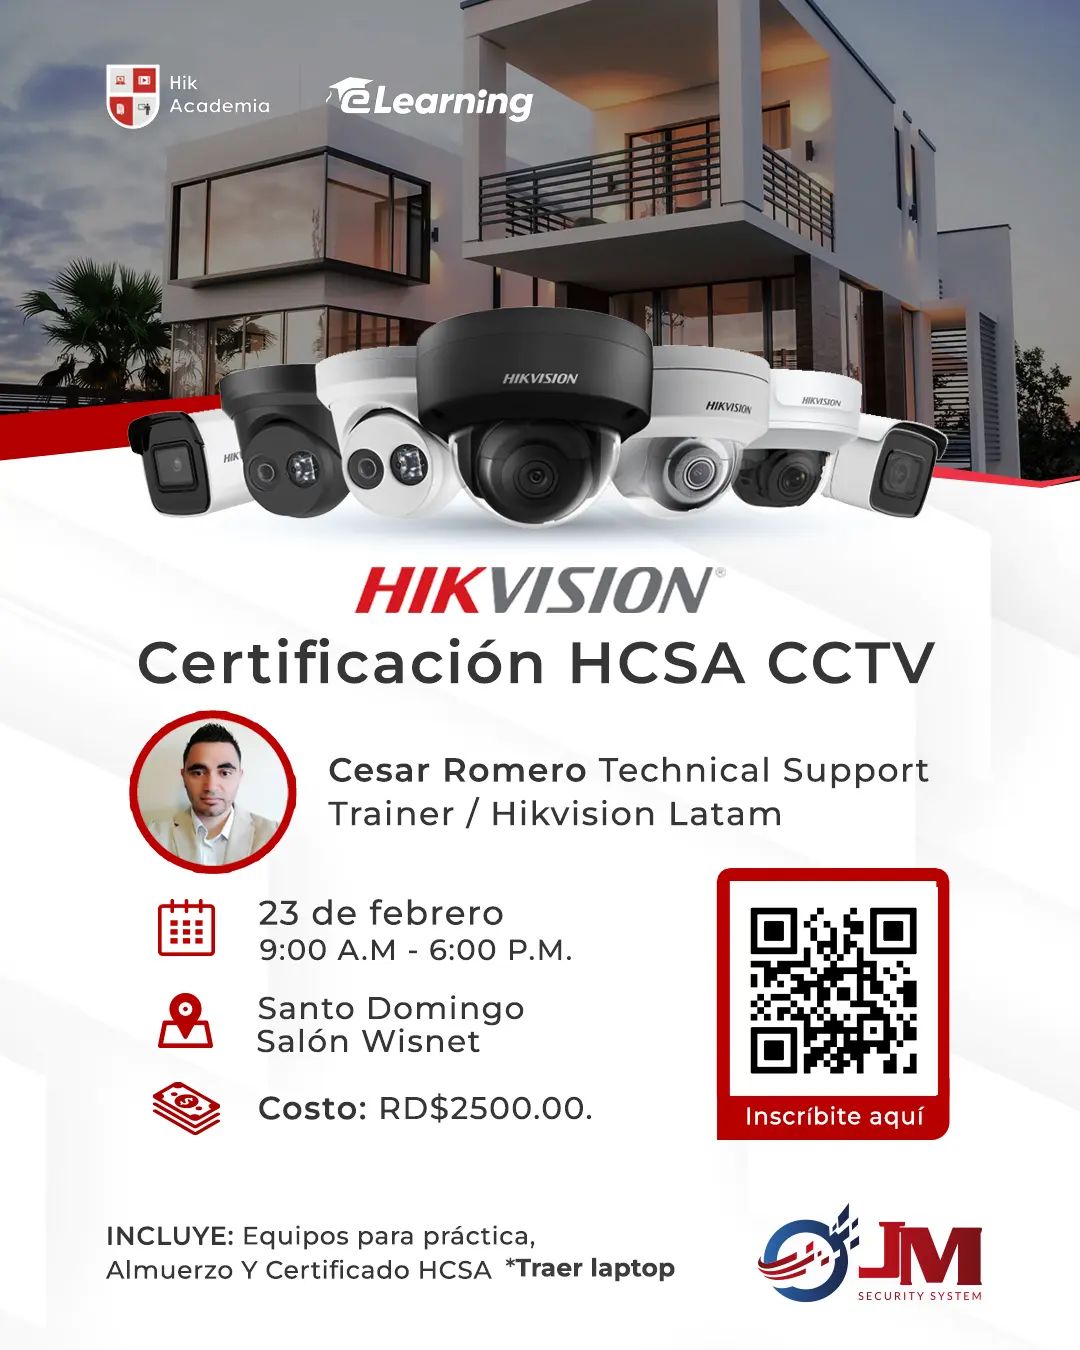 ¡Certifícate en HCSA - CCTV de Hikvision! 👁️🔐 Únete a nosotros el 23 de feb...